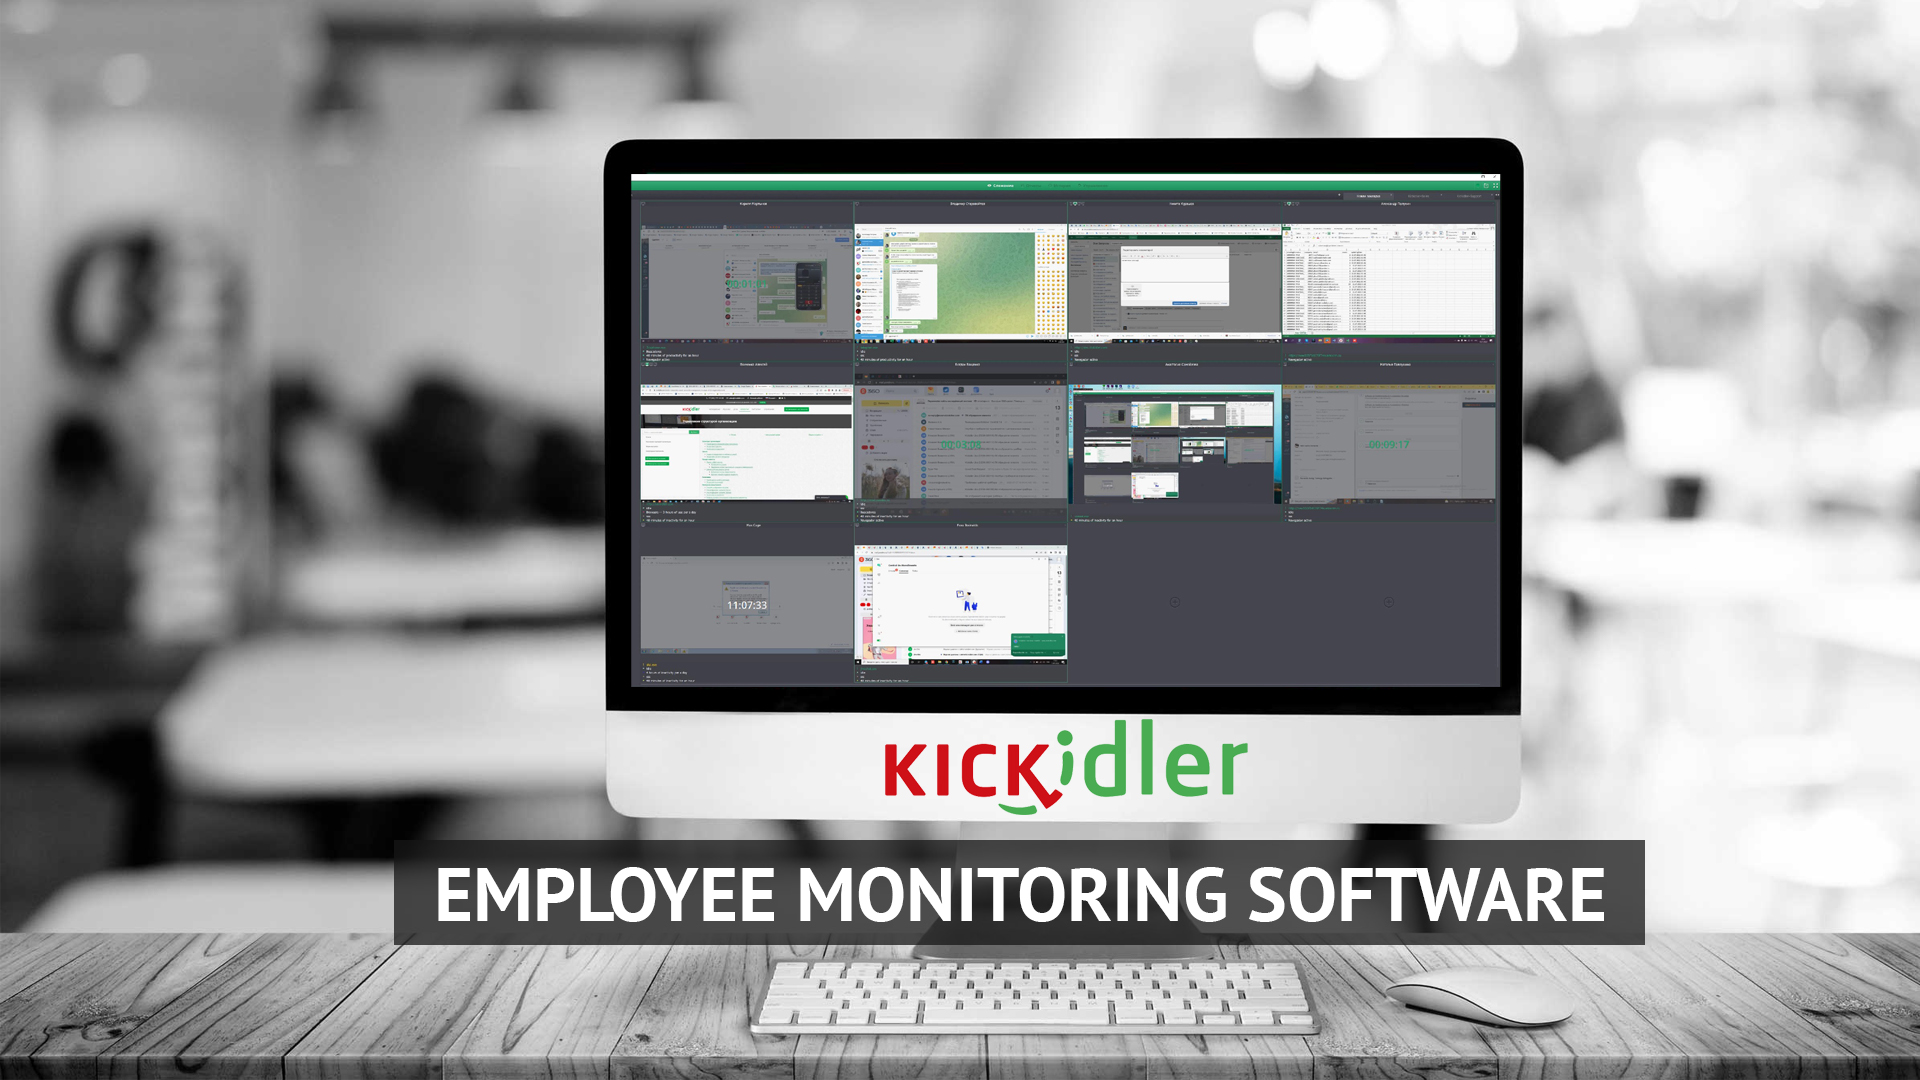 Kickidler Software Overview